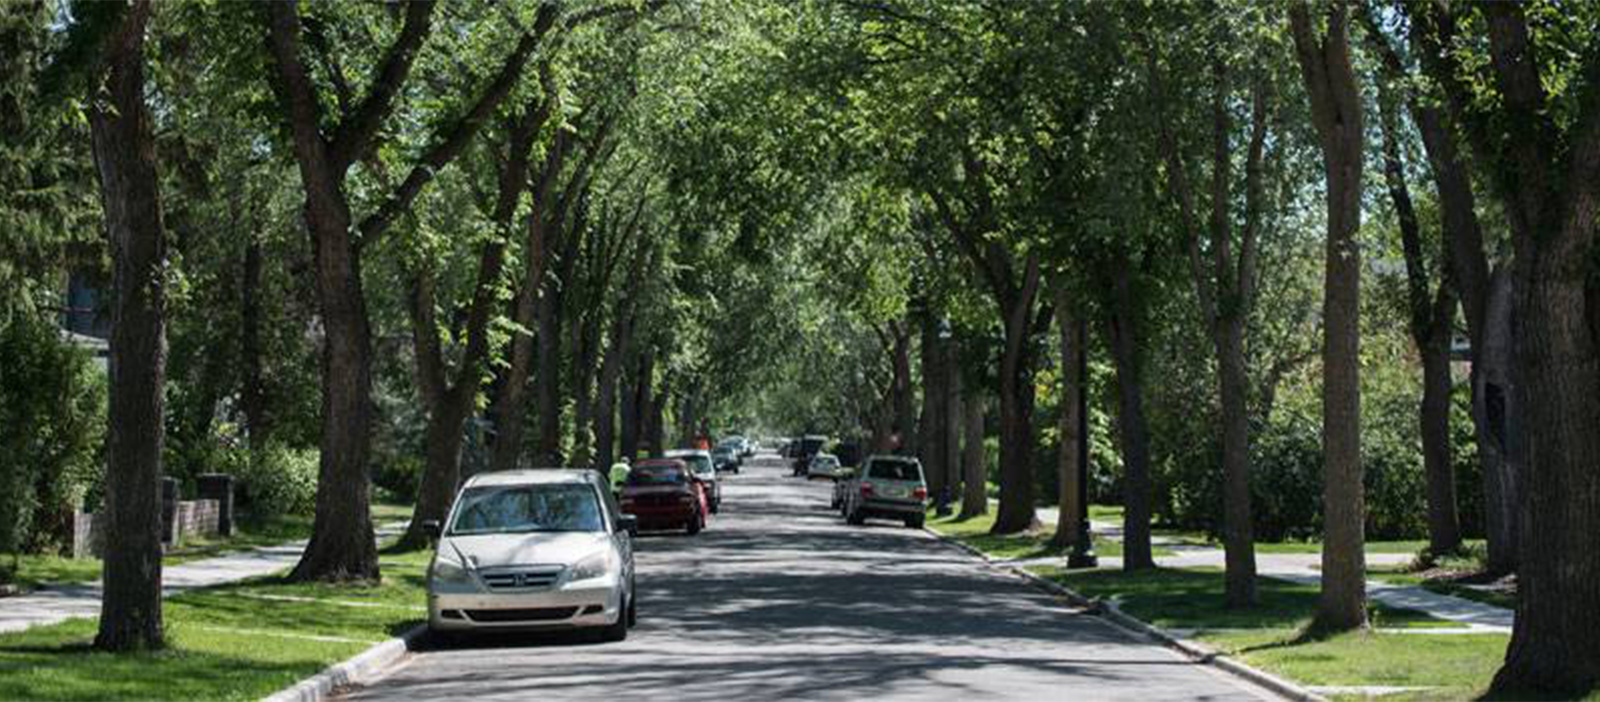 Mature Boulevard Trees help calm traffic speeds